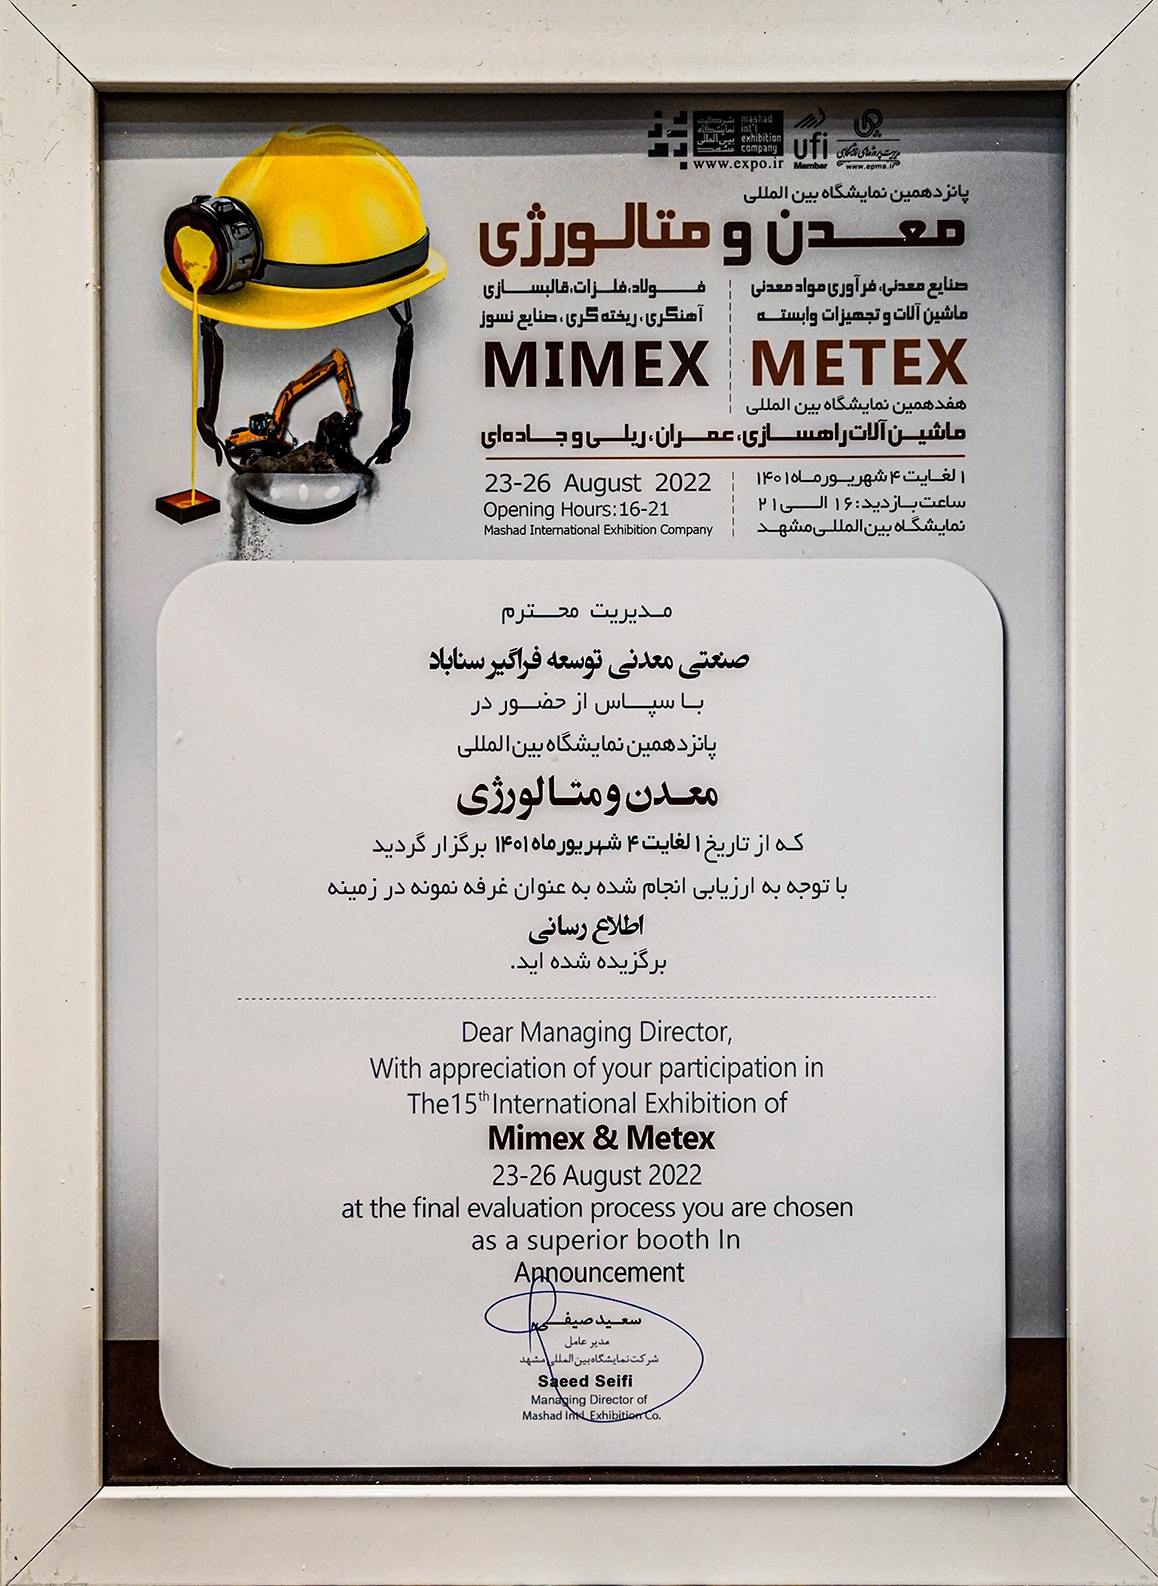 کسب عنوان غرفه برتر پانزدهمین نمایشگاه بین المللی معدن و متالورژی توسط سیمیدکو